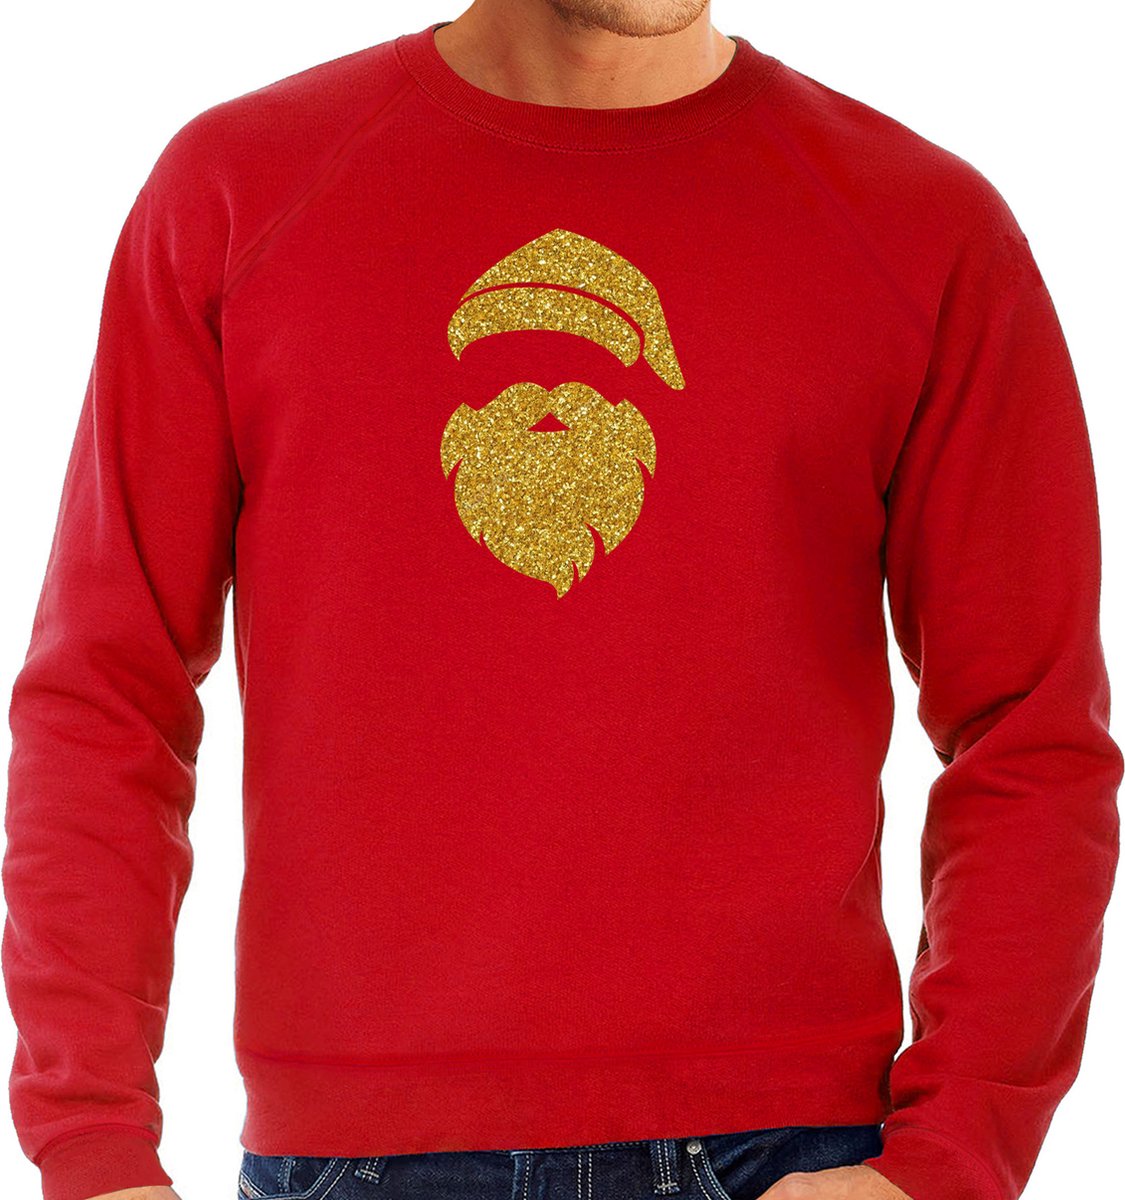 Kerstman hoofd Kerst trui - rood met gouden glitter bedrukking - heren - Kerst sweaters / Kerst outfit L